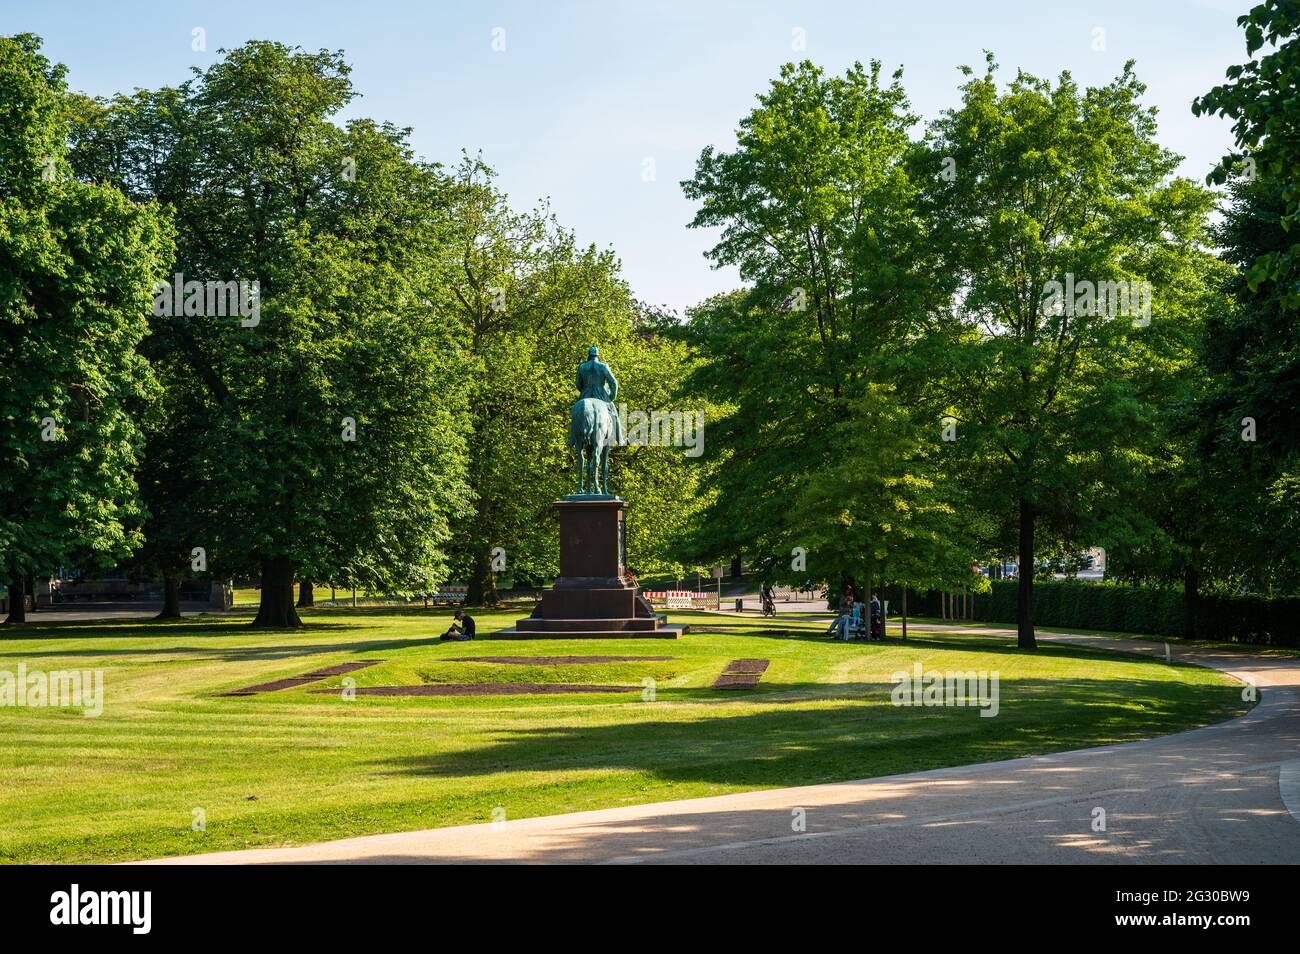 Der Schloßgarten in Kiel ist immer ein schöner Ort an dem man sich vom Trubel der Innenstadt bestens entspannen kann Einer von mehrerren Parkanlagen r Stock Photo